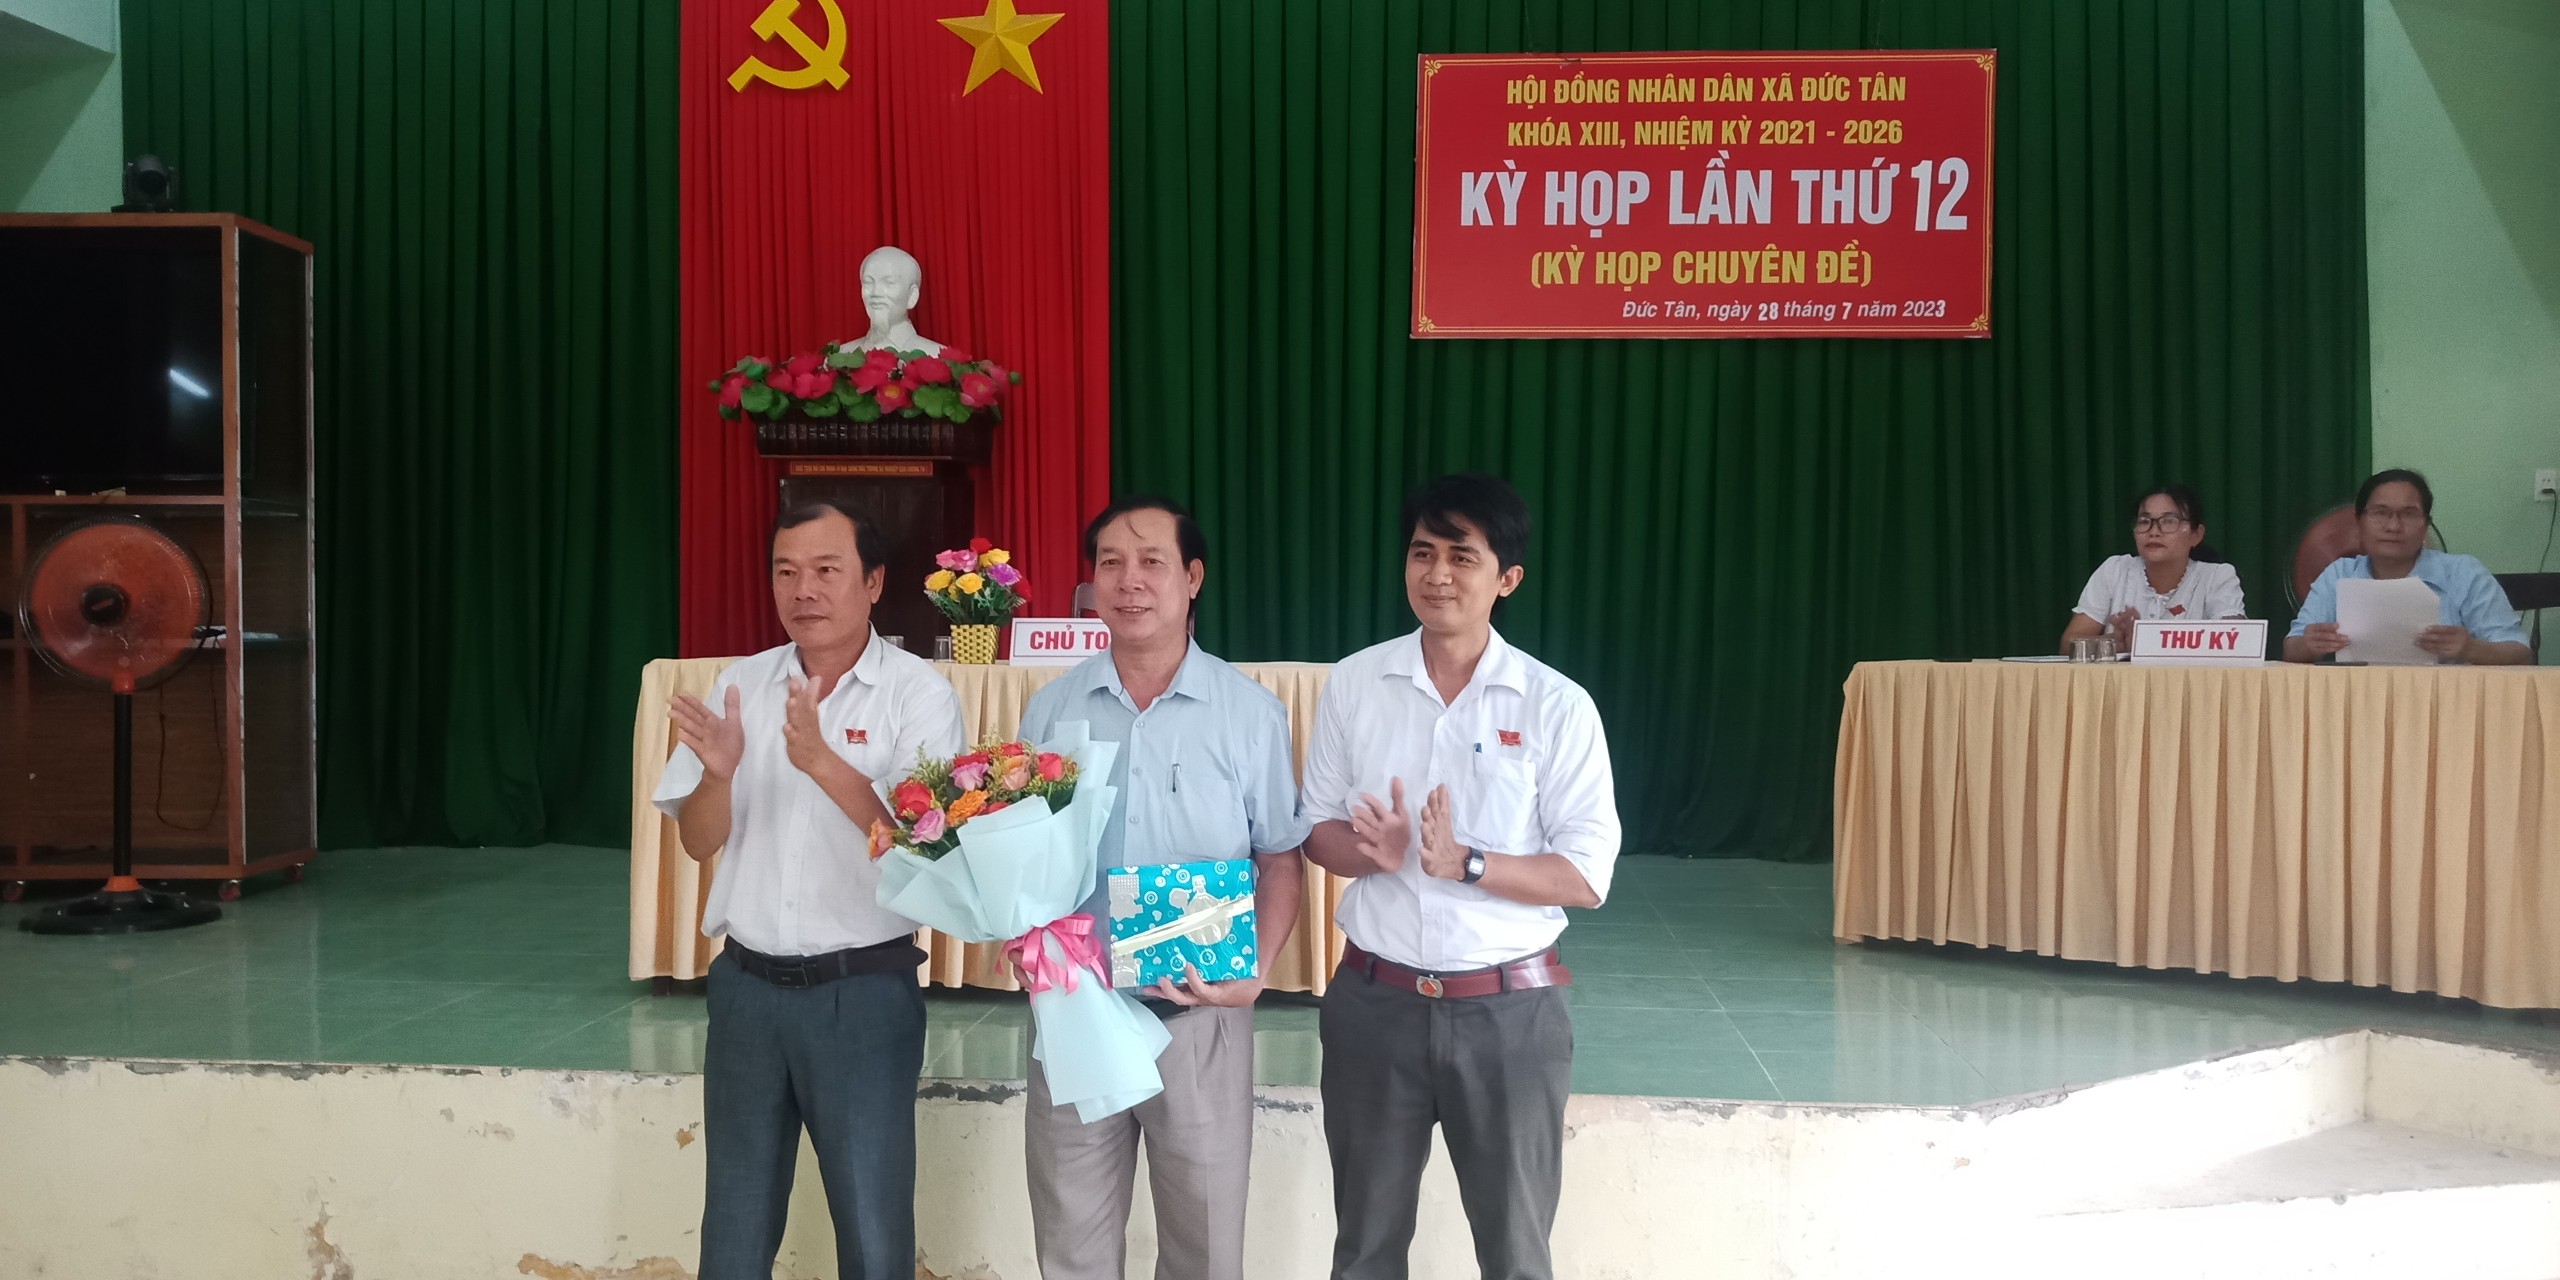 Đ/c: Nguyễn Văn Từ nhận hoa và quà thôi giữ chức vụ chủ tịch HĐND xã Đức Tân